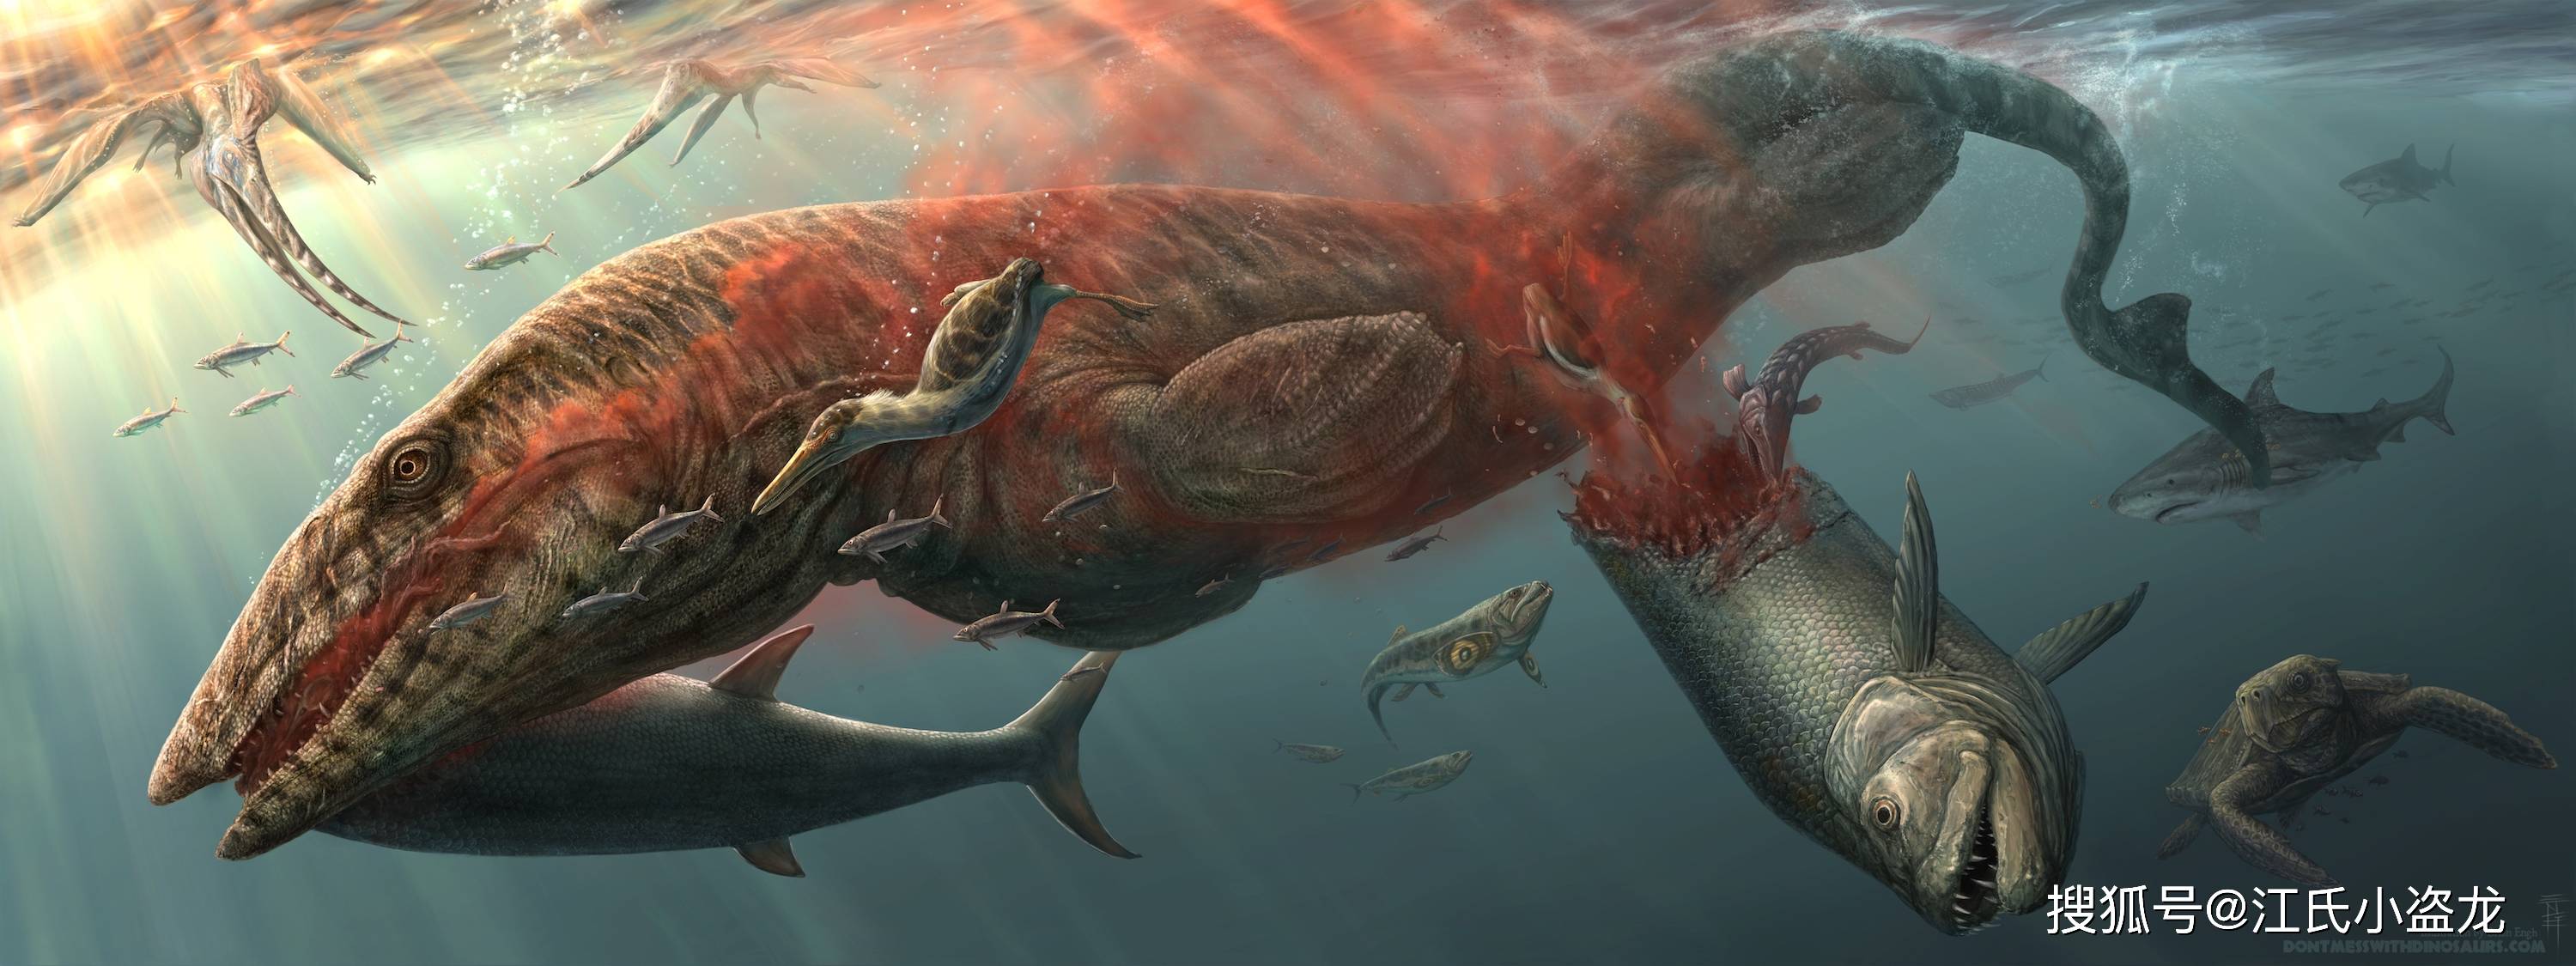 复原图整体上表现了残暴的海王龙捕食的场景,被它杀